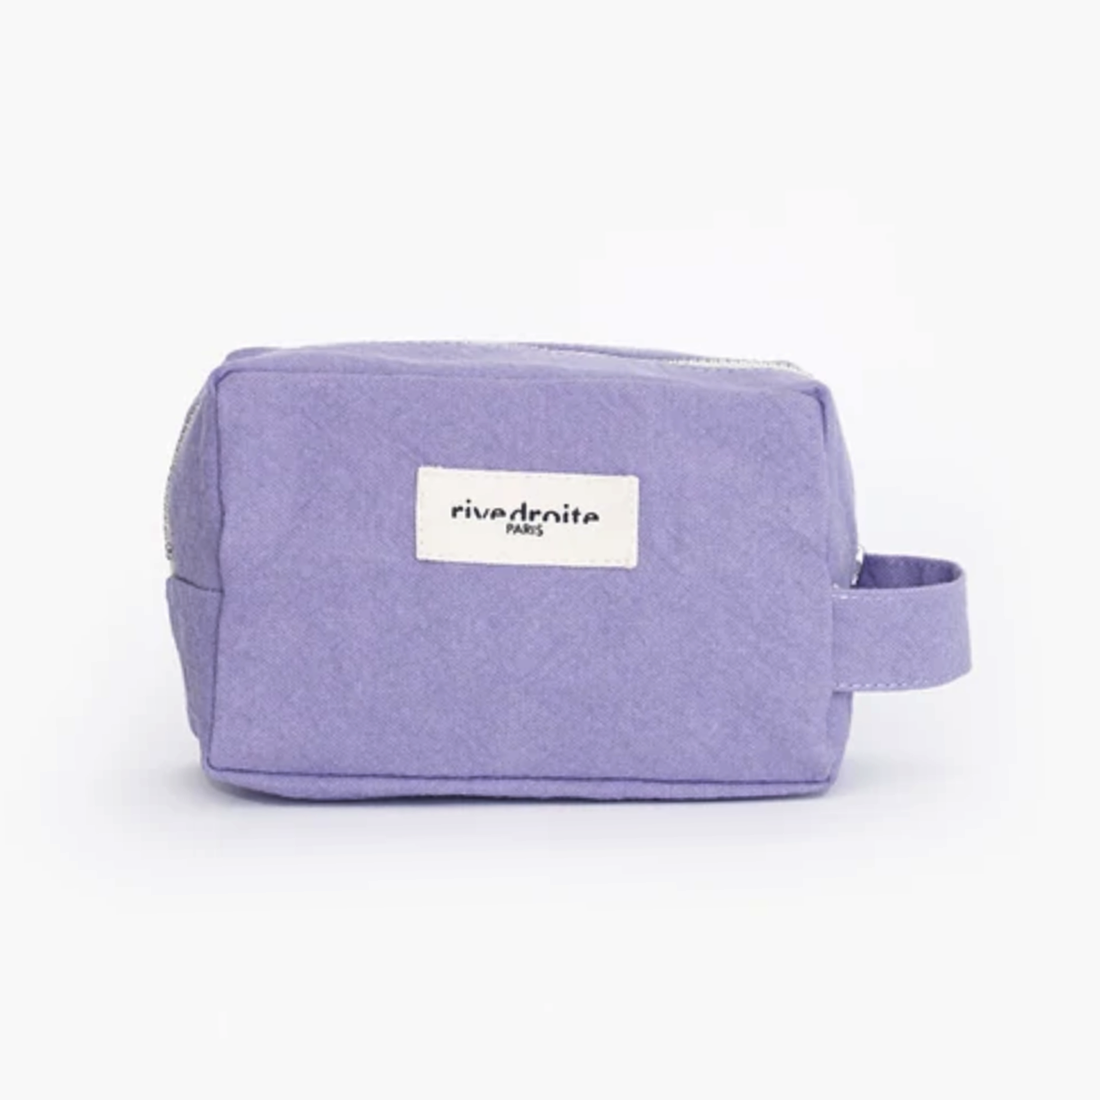 Rive Droite Paris Lilac Recycled Cotton Make-up Bag - Tournelles 